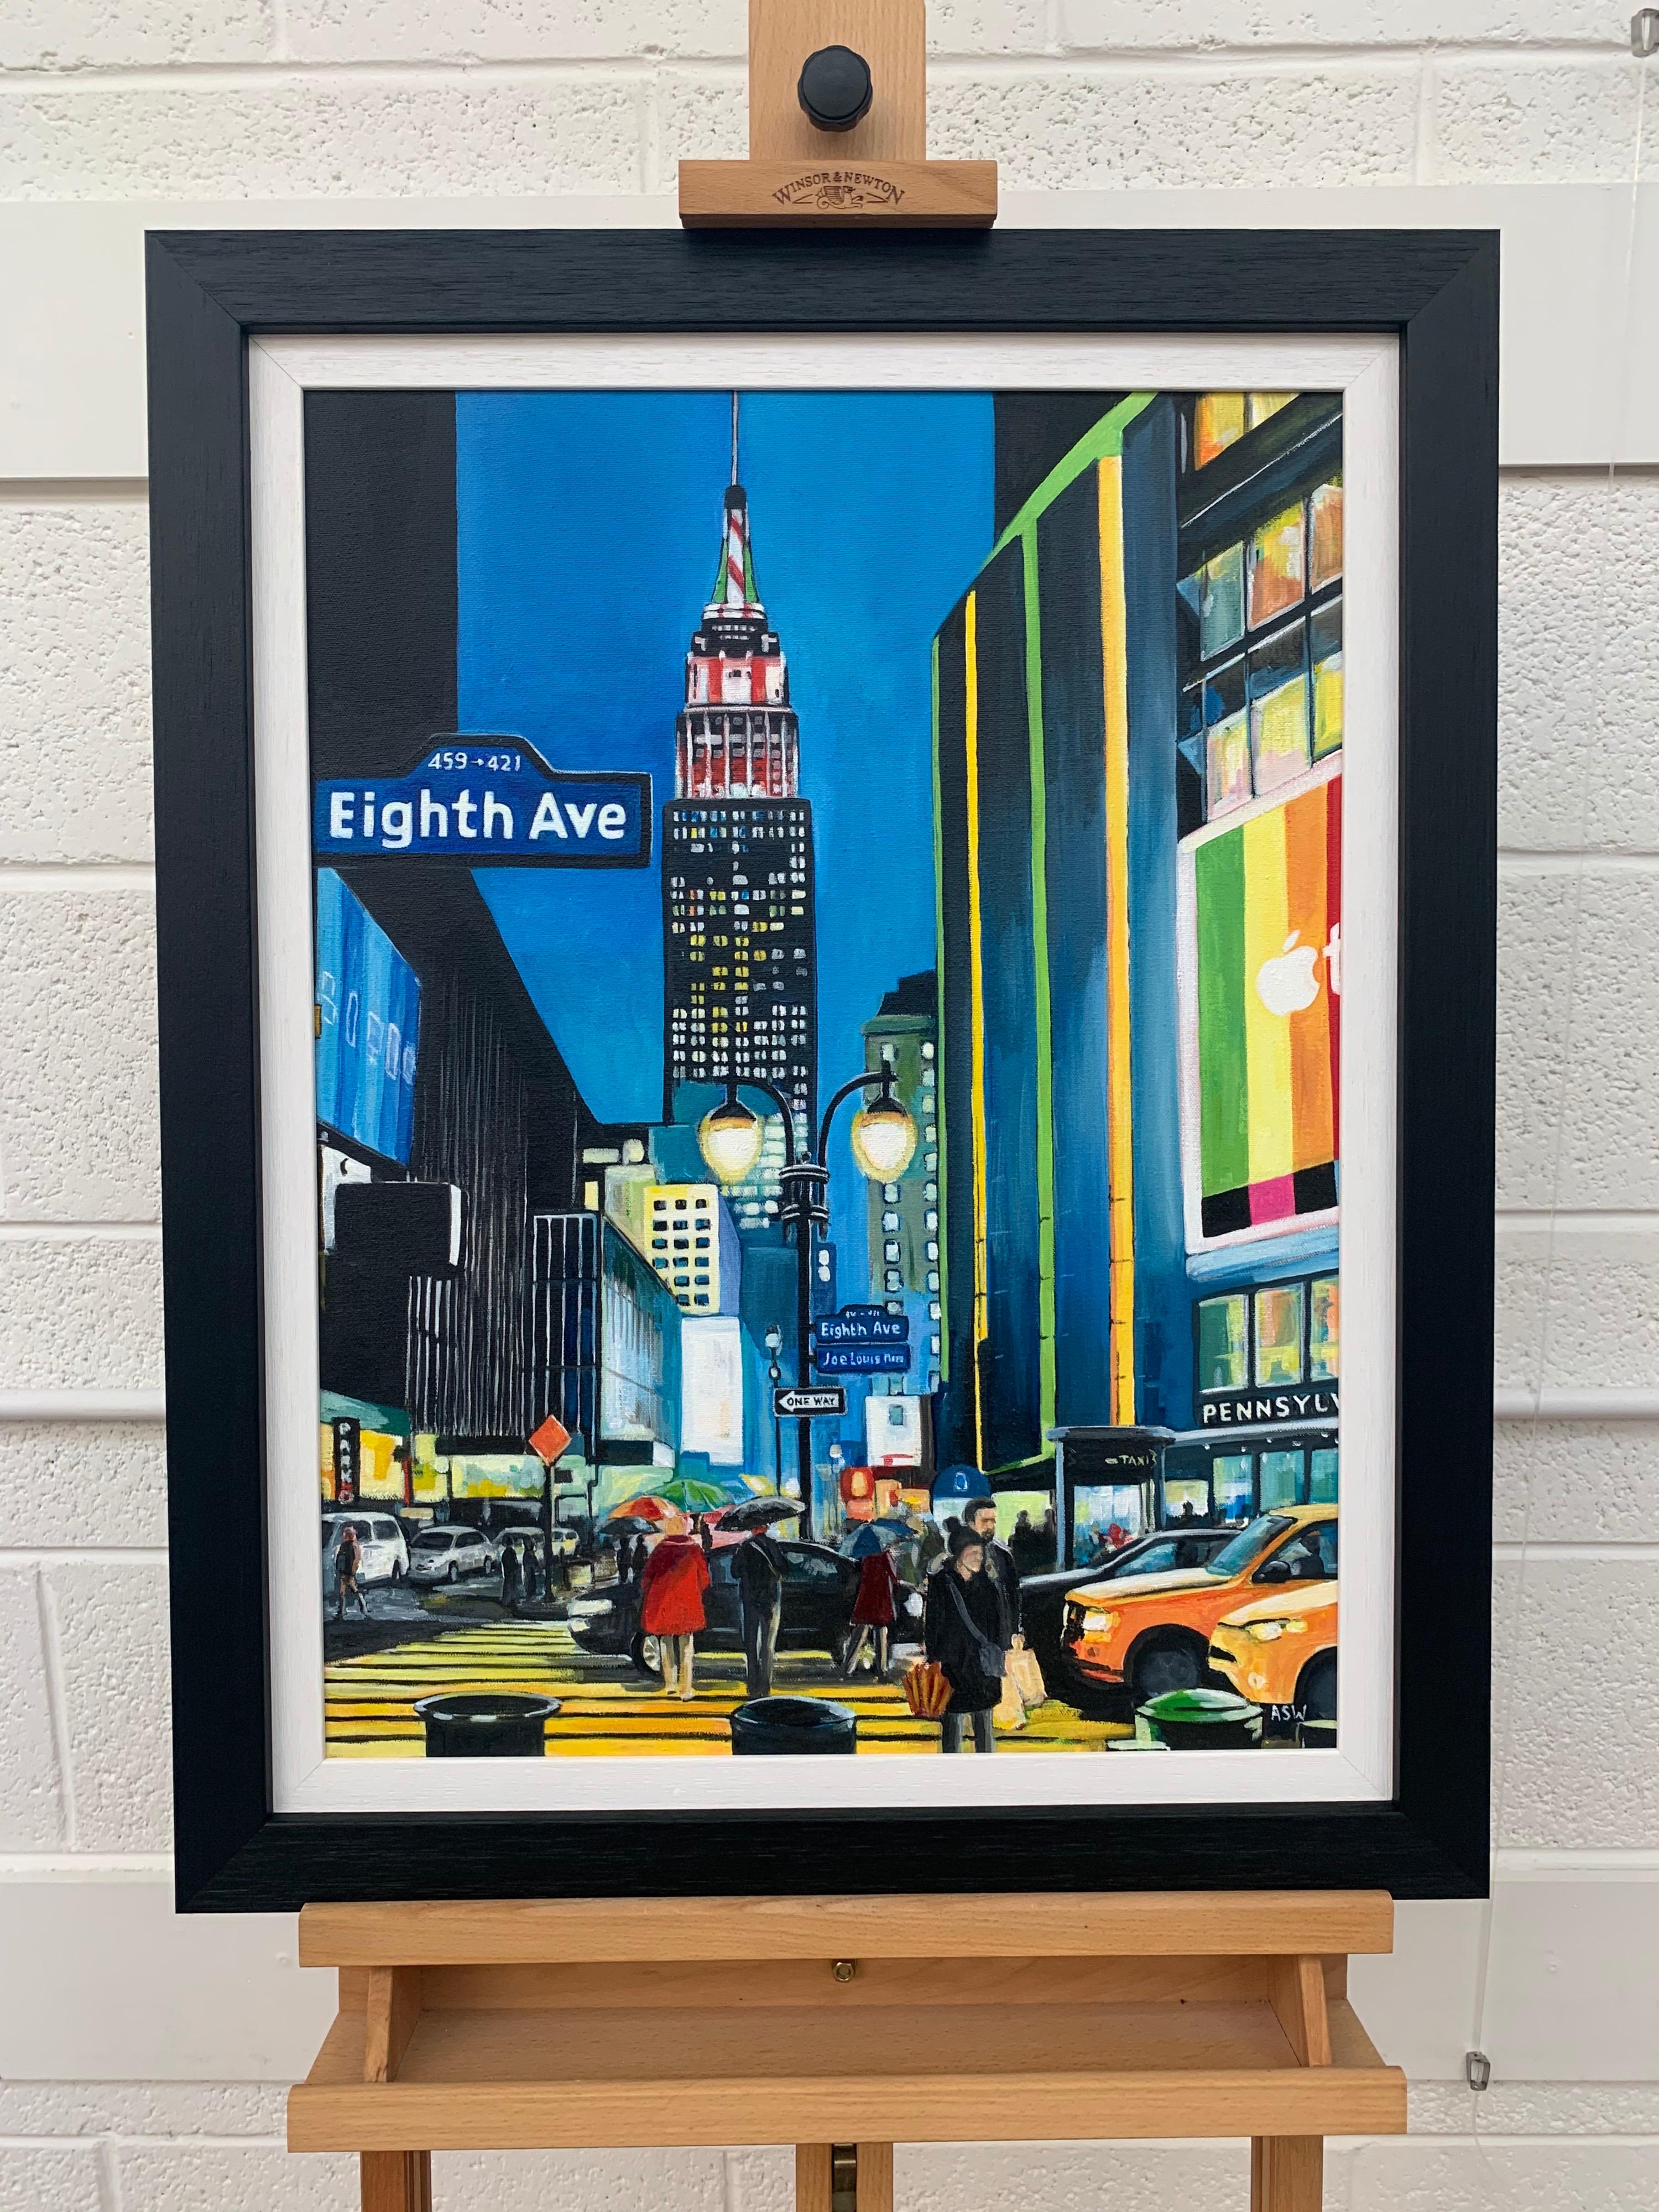 Empire State Building Eighth Avenue New York City par l'artiste britannique contemporaine Angela Wakefield. Il s'agit d'une œuvre majeure de sa série New York.

L'œuvre d'art mesure 18 x 24 pouces
Le cadre mesure 23 x 29 pouces

Le travail de